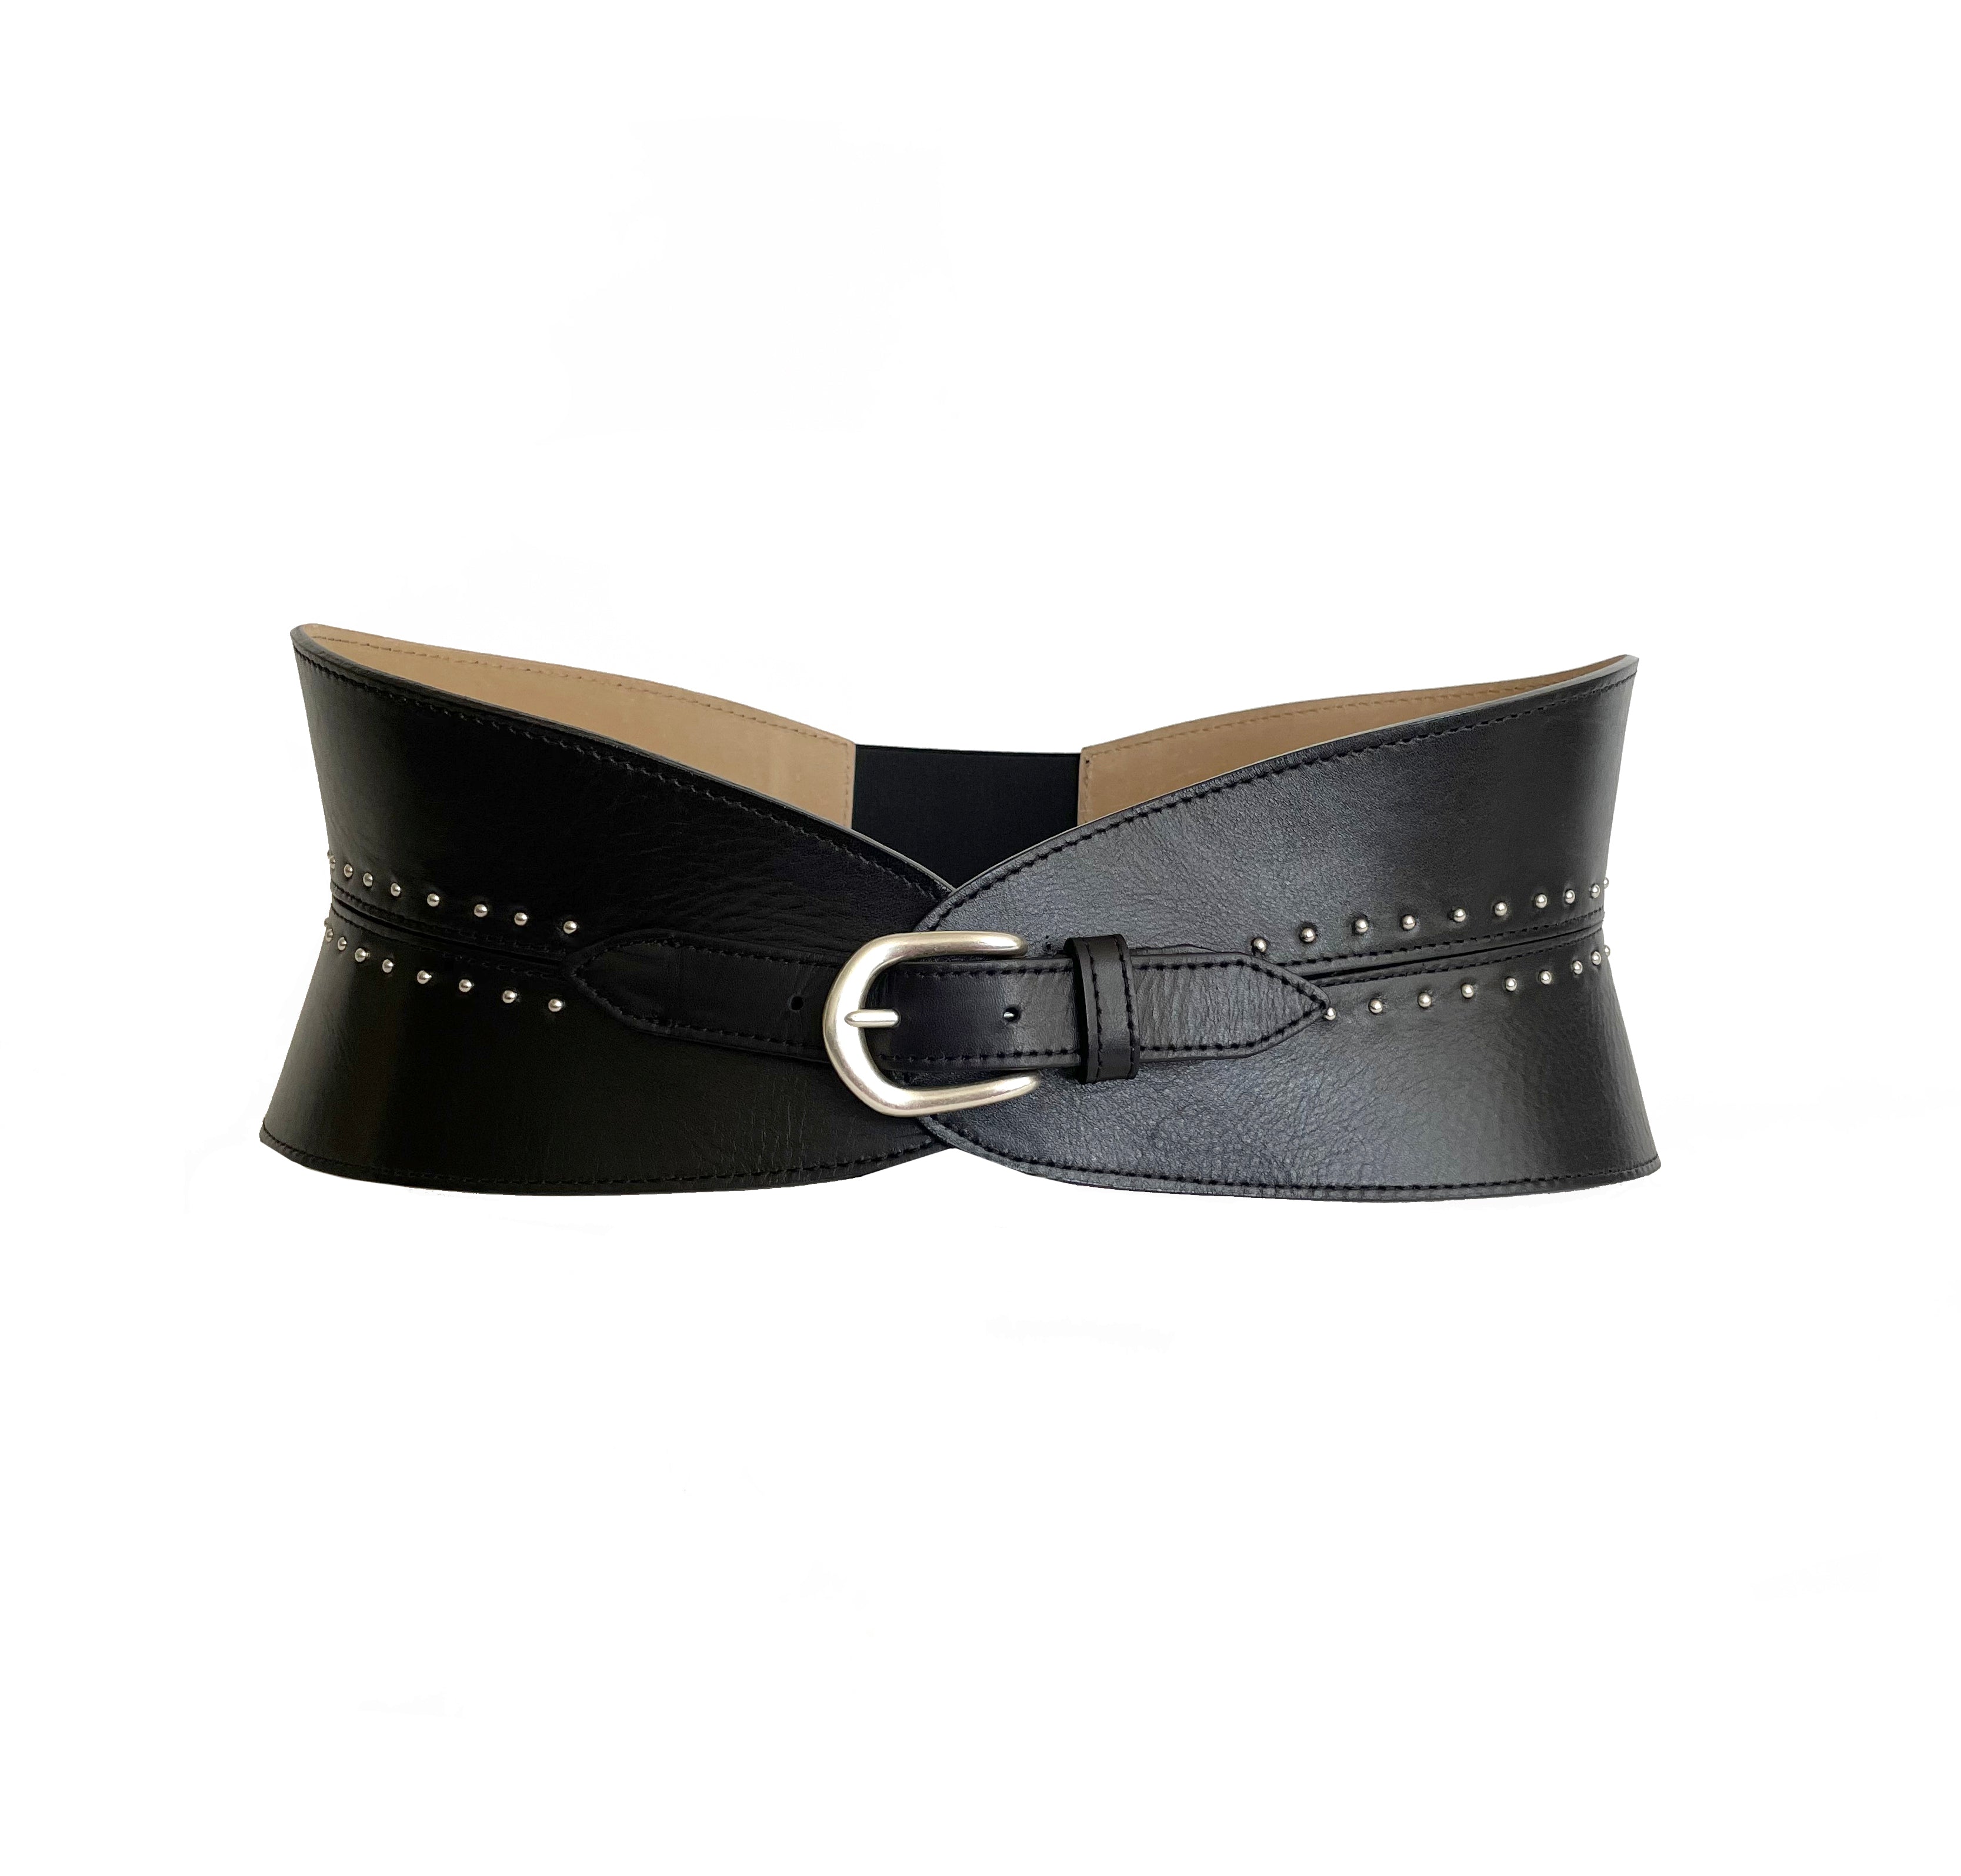 Adalynn Belt - Wide Waist Black Leather Contemporary Corset Belt